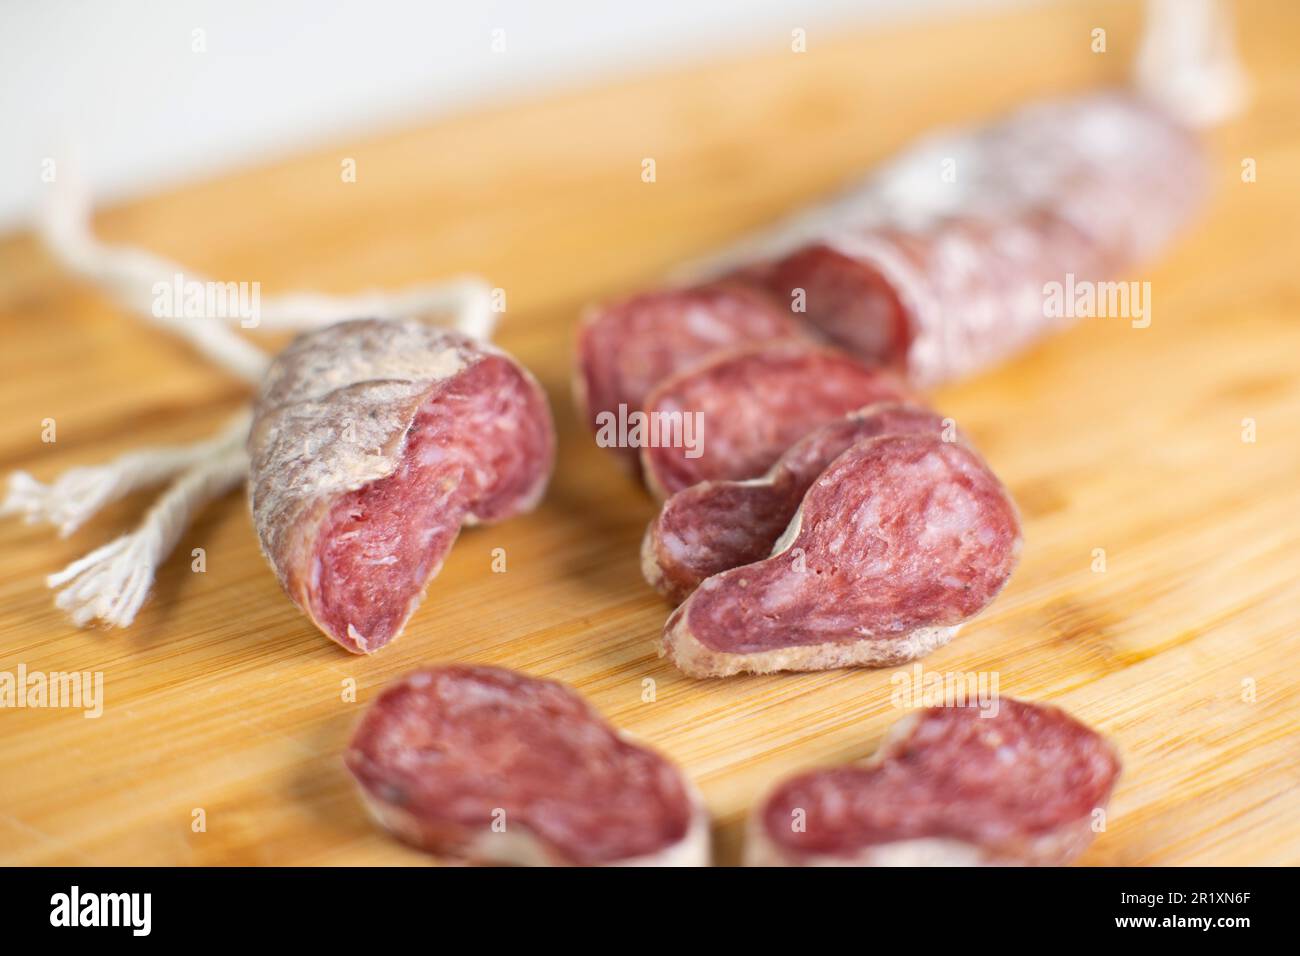 Fuet è una salsiccia a base di carne di maiale magra tipica della cucina catalana, diffusa in tutto il resto della Spagna Foto Stock